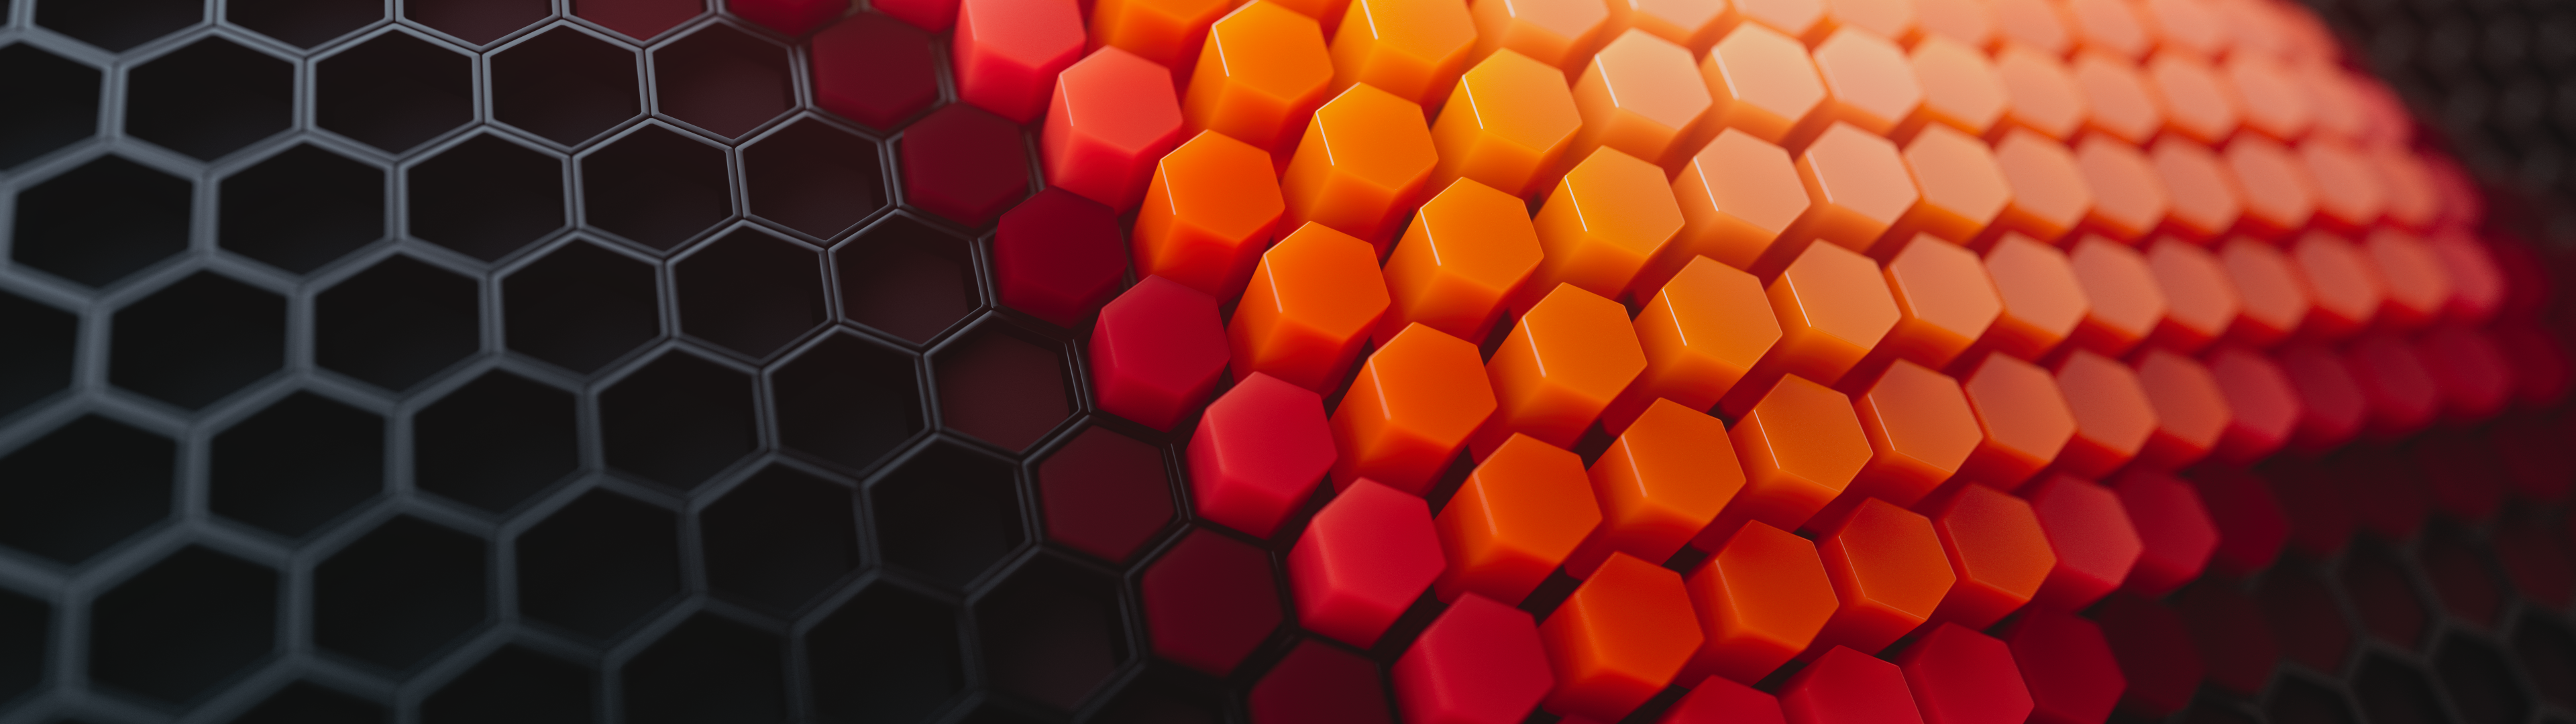 Hãy trang trí máy tính của bạn với những hình ảnh Hexagons Wallpaper 4K độc đáo! Patterns sẽ mang đến cho bạn những bức hình với hiệu ứng 3D, đầy chất giác mắt và phong cách. Bạn sẽ cảm thấy yên tâm trong các dự án sáng tạo nhất của mình, bởi vì những hình ảnh này có thể phù hợp với mọi phong cách thiết kế.